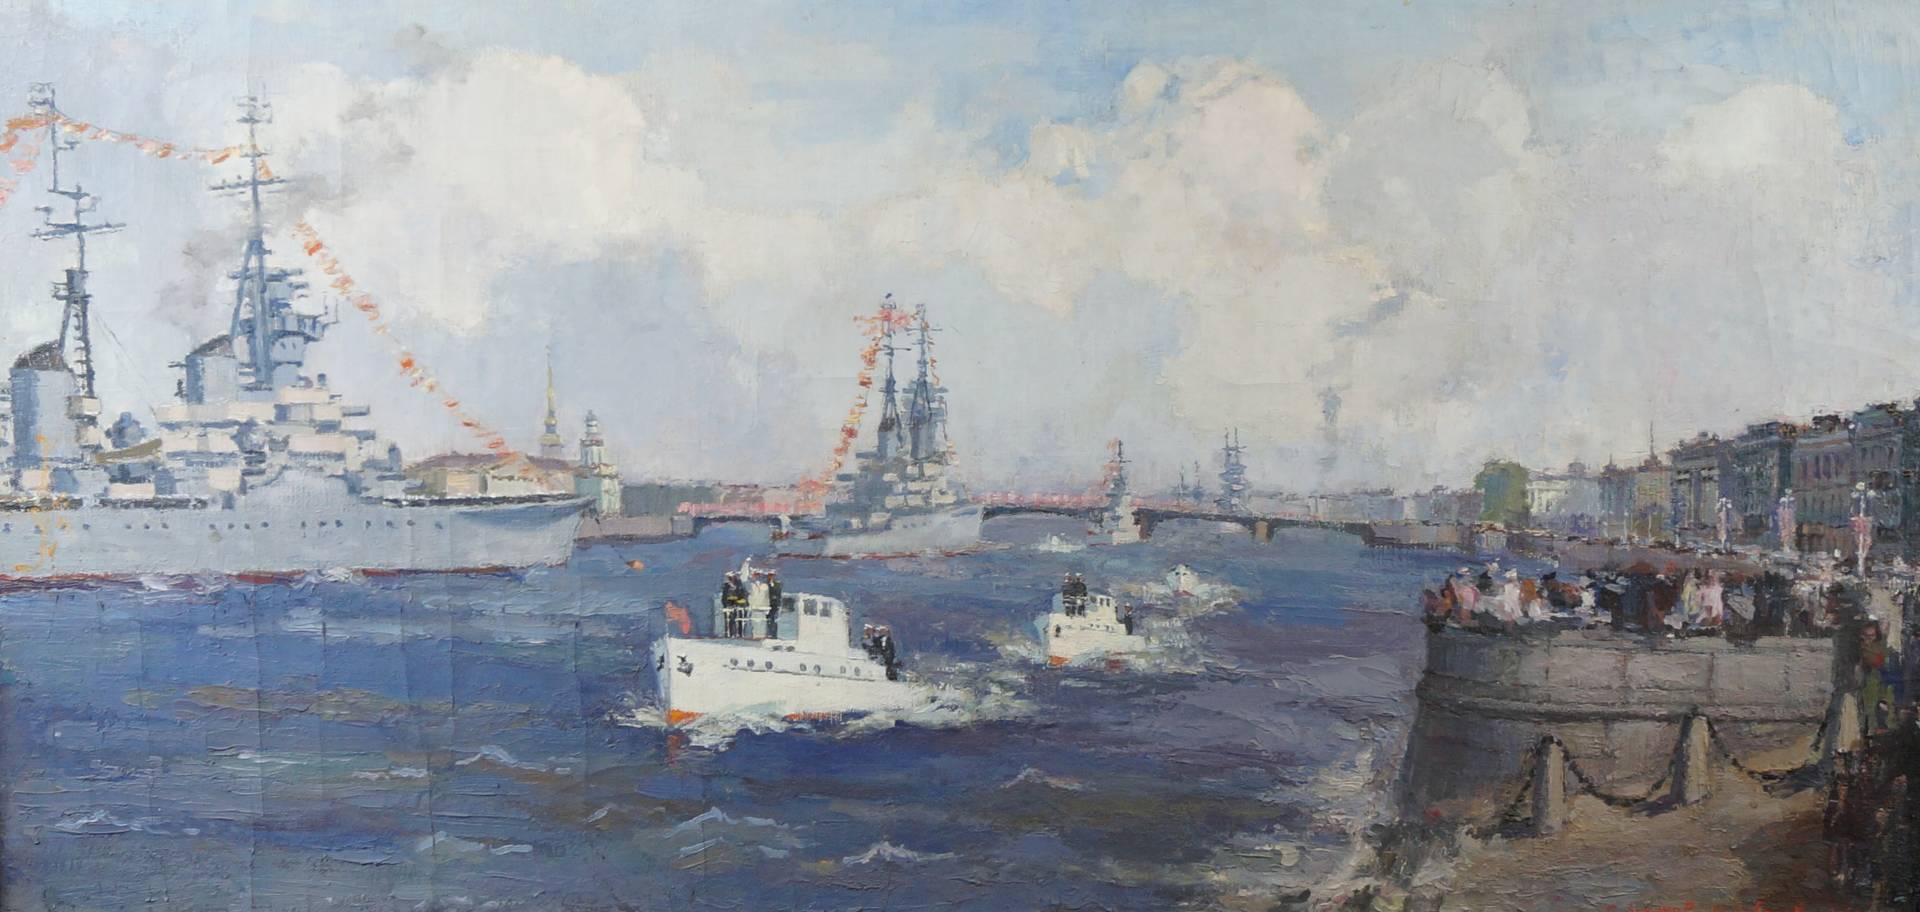 Сергей Захаров. Военно-морской парад на Неве. 1957